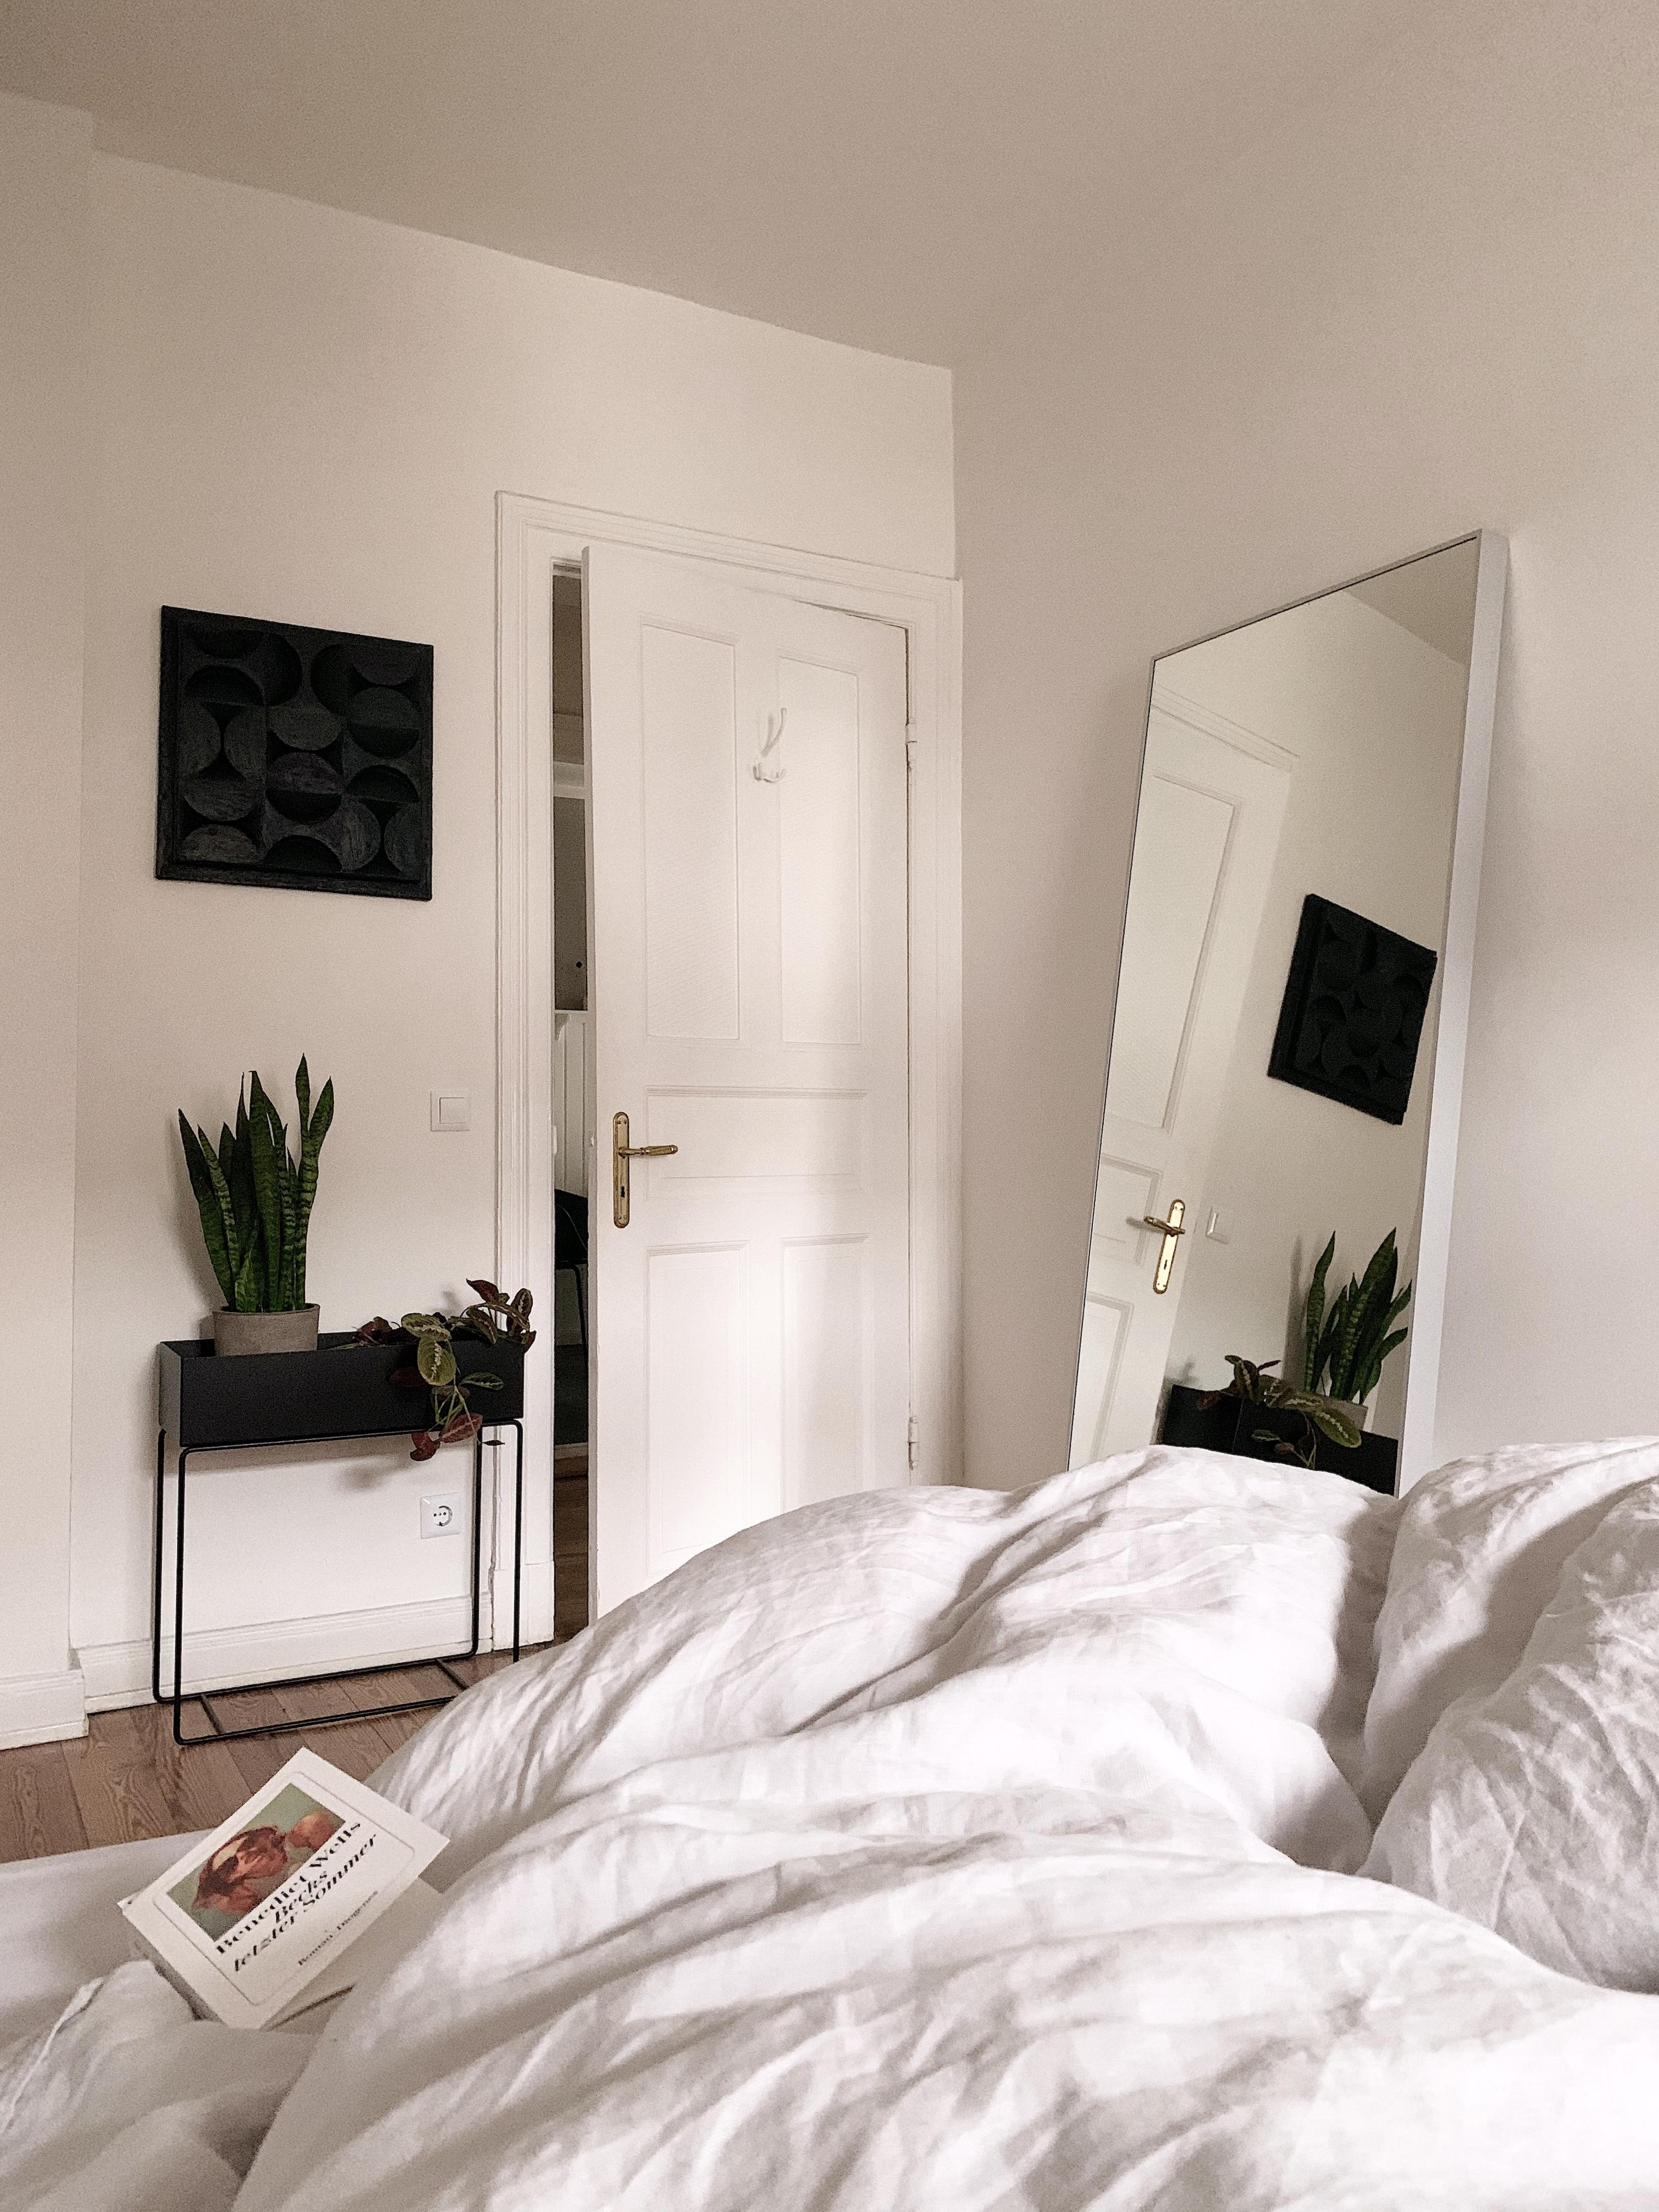 Bedroom Views #skandistyle #minimalism #3drelief #art #flowerbox